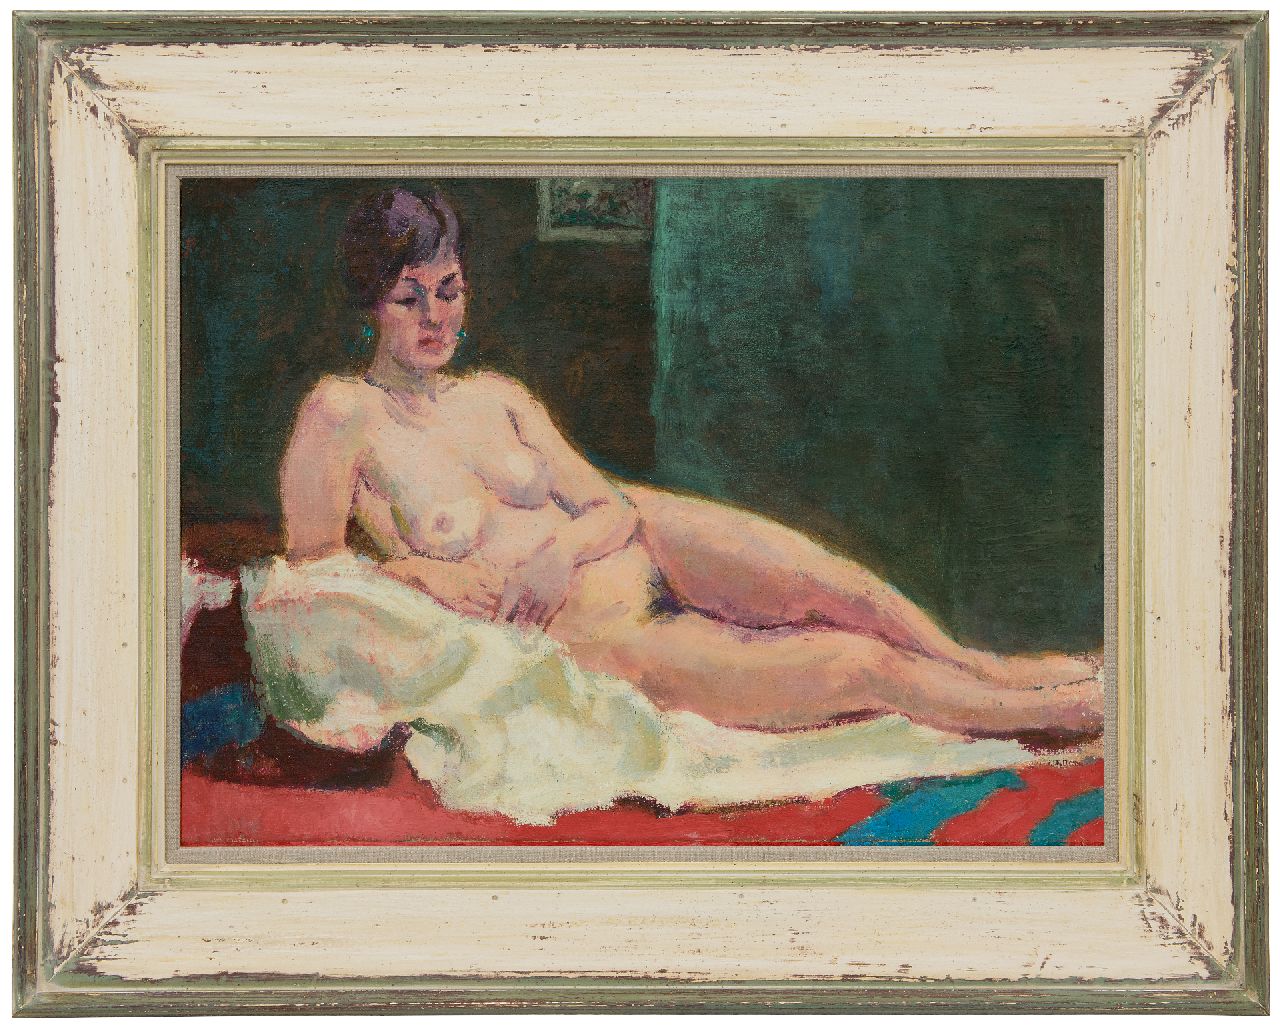 Altink J.  | Jan Altink | Gemälde zum Verkauf angeboten | Ruhender weiblicher Akt, Öl auf Leinwand 49,9 x 70,4 cm